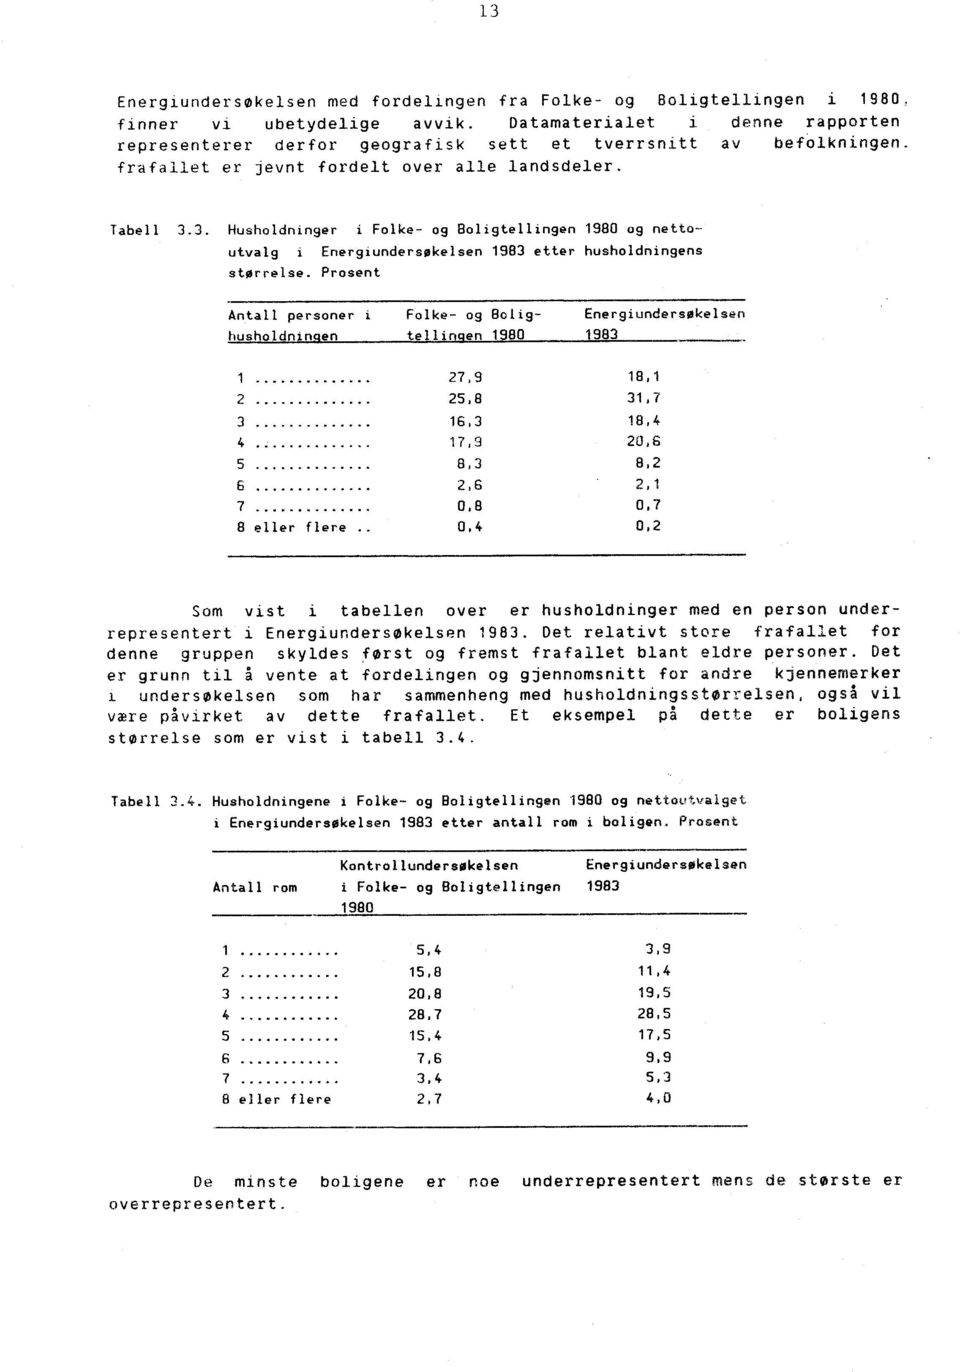 3. Husholdninger i Folke- og Boligtellingen 1980 og nettoutvalg i Energiundersøkelsen 1983 etter husholdningens størrelse.